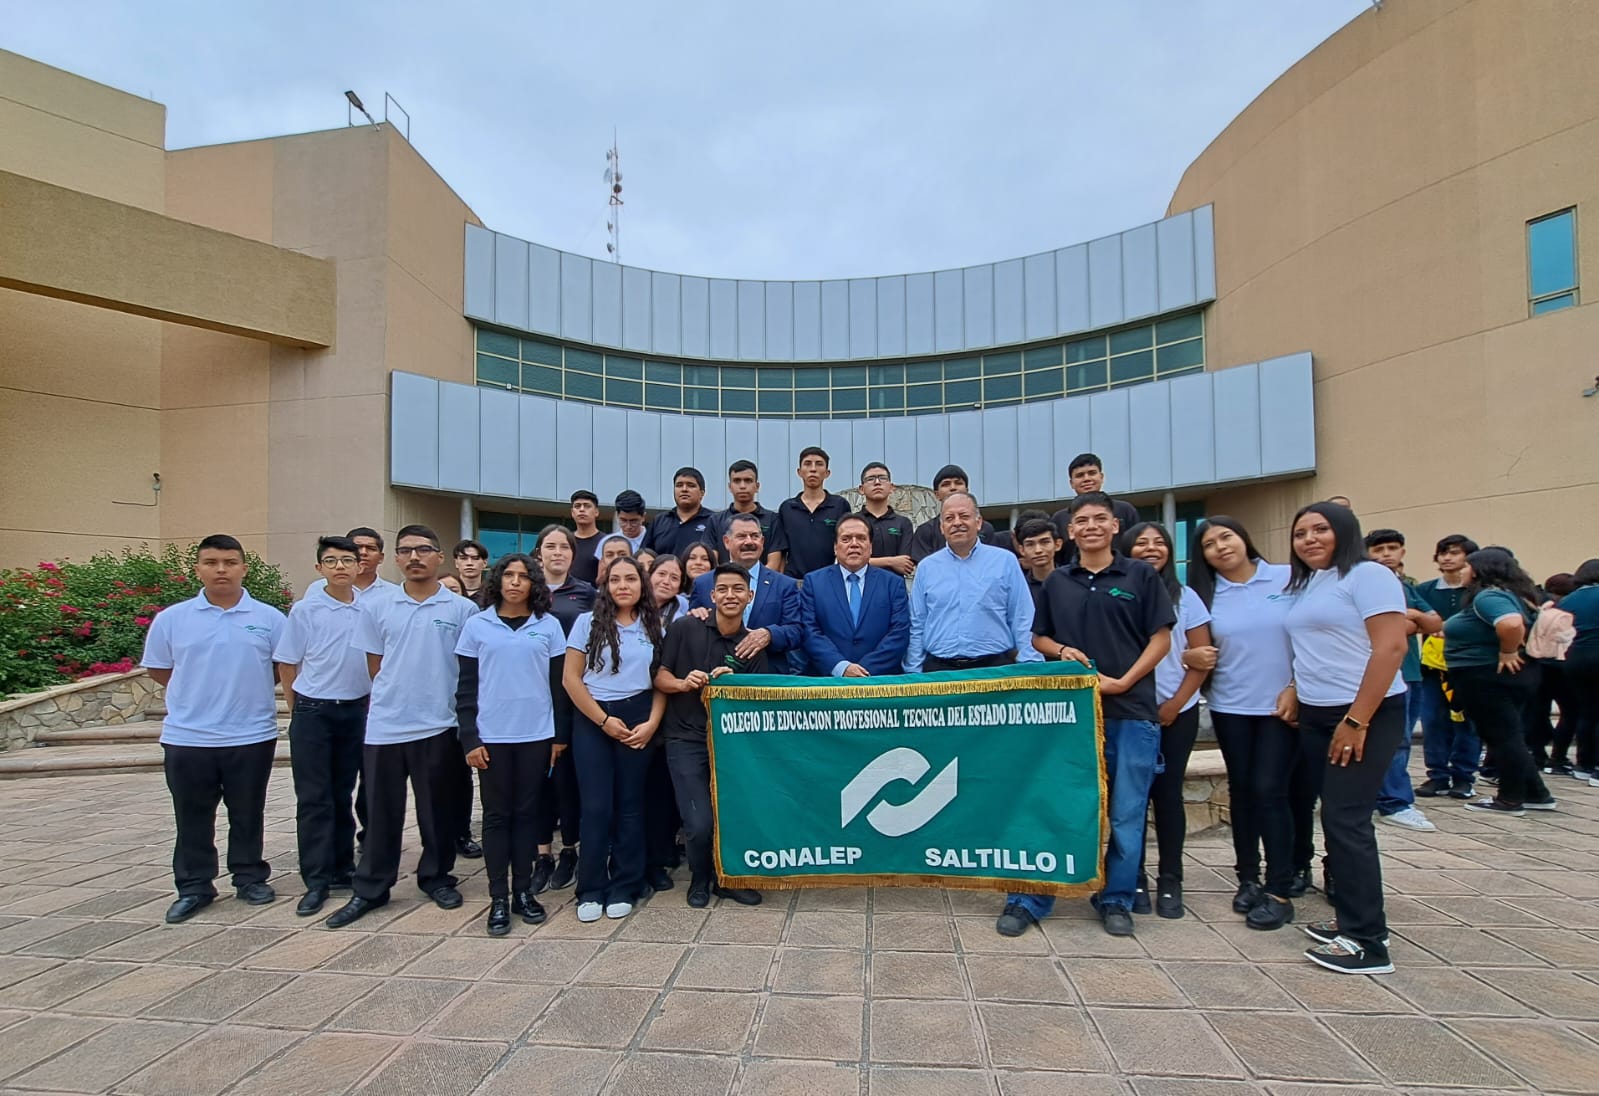 El convenio celebrado con la Fiscalía General del Estado de Coahuila fortalece el cumplimiento de los principales fines de la educación que los futuros profesionales técnicos bachiller deben tener.